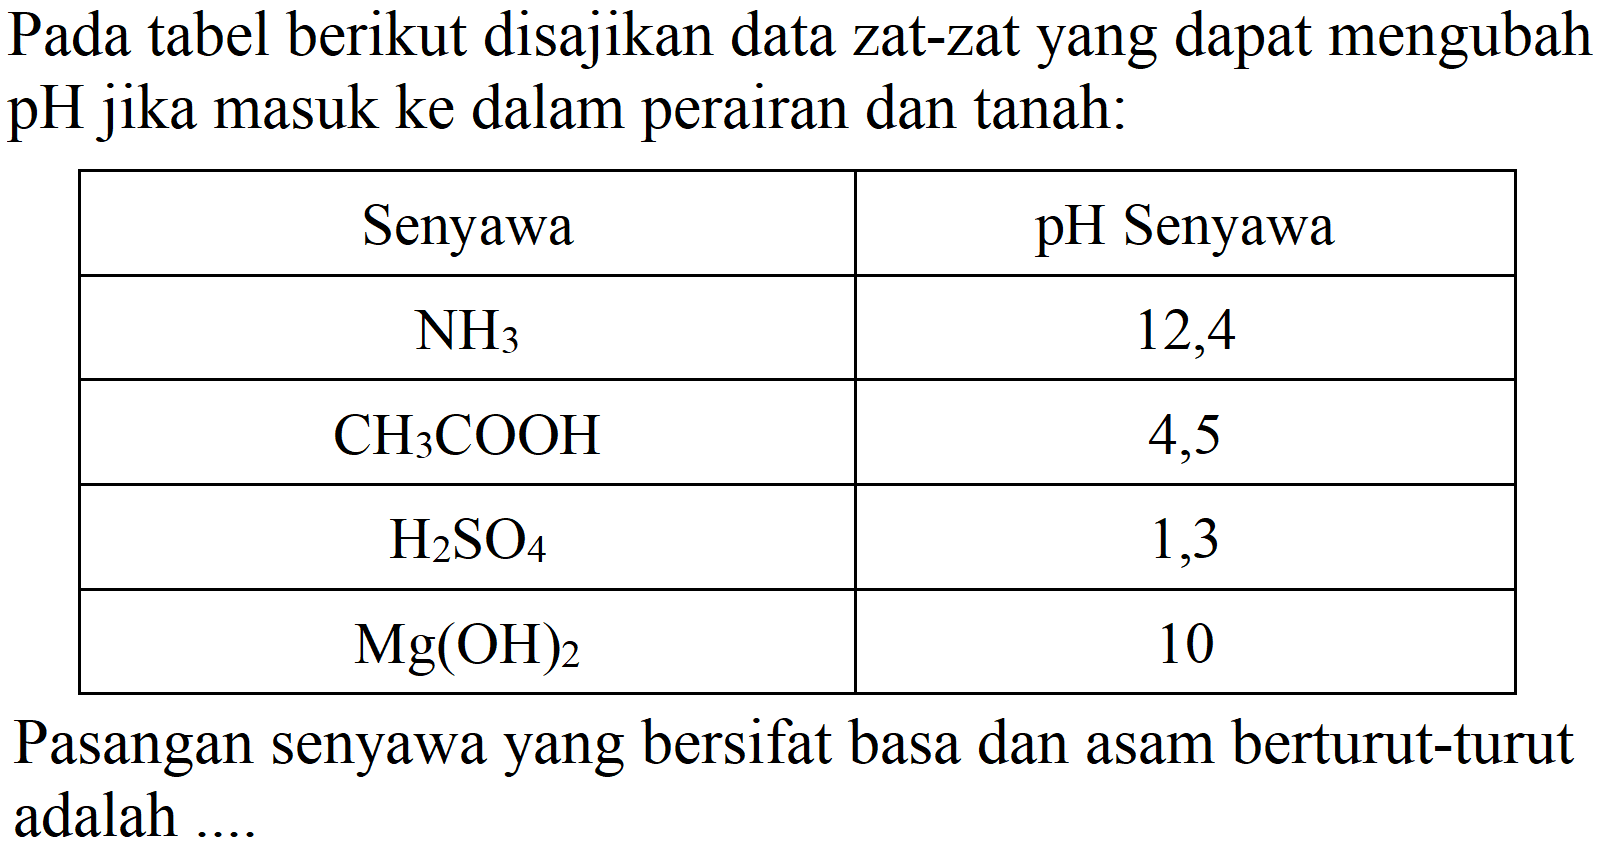 Pada tabel berikut disajikan data zat-zat yang dapat mengubah pH jika masuk ke dalam perairan dan tanah:

 Senyawa  pH Senyawa 
  NH_(3)   12,4 
  CH_(3) COOH   4,5 
  H_(2) SO_(4)   1,3 
  Mg(OH)_(2)   10 


Pasangan senyawa yang bersifat basa dan asam berturut-turut adalah ...